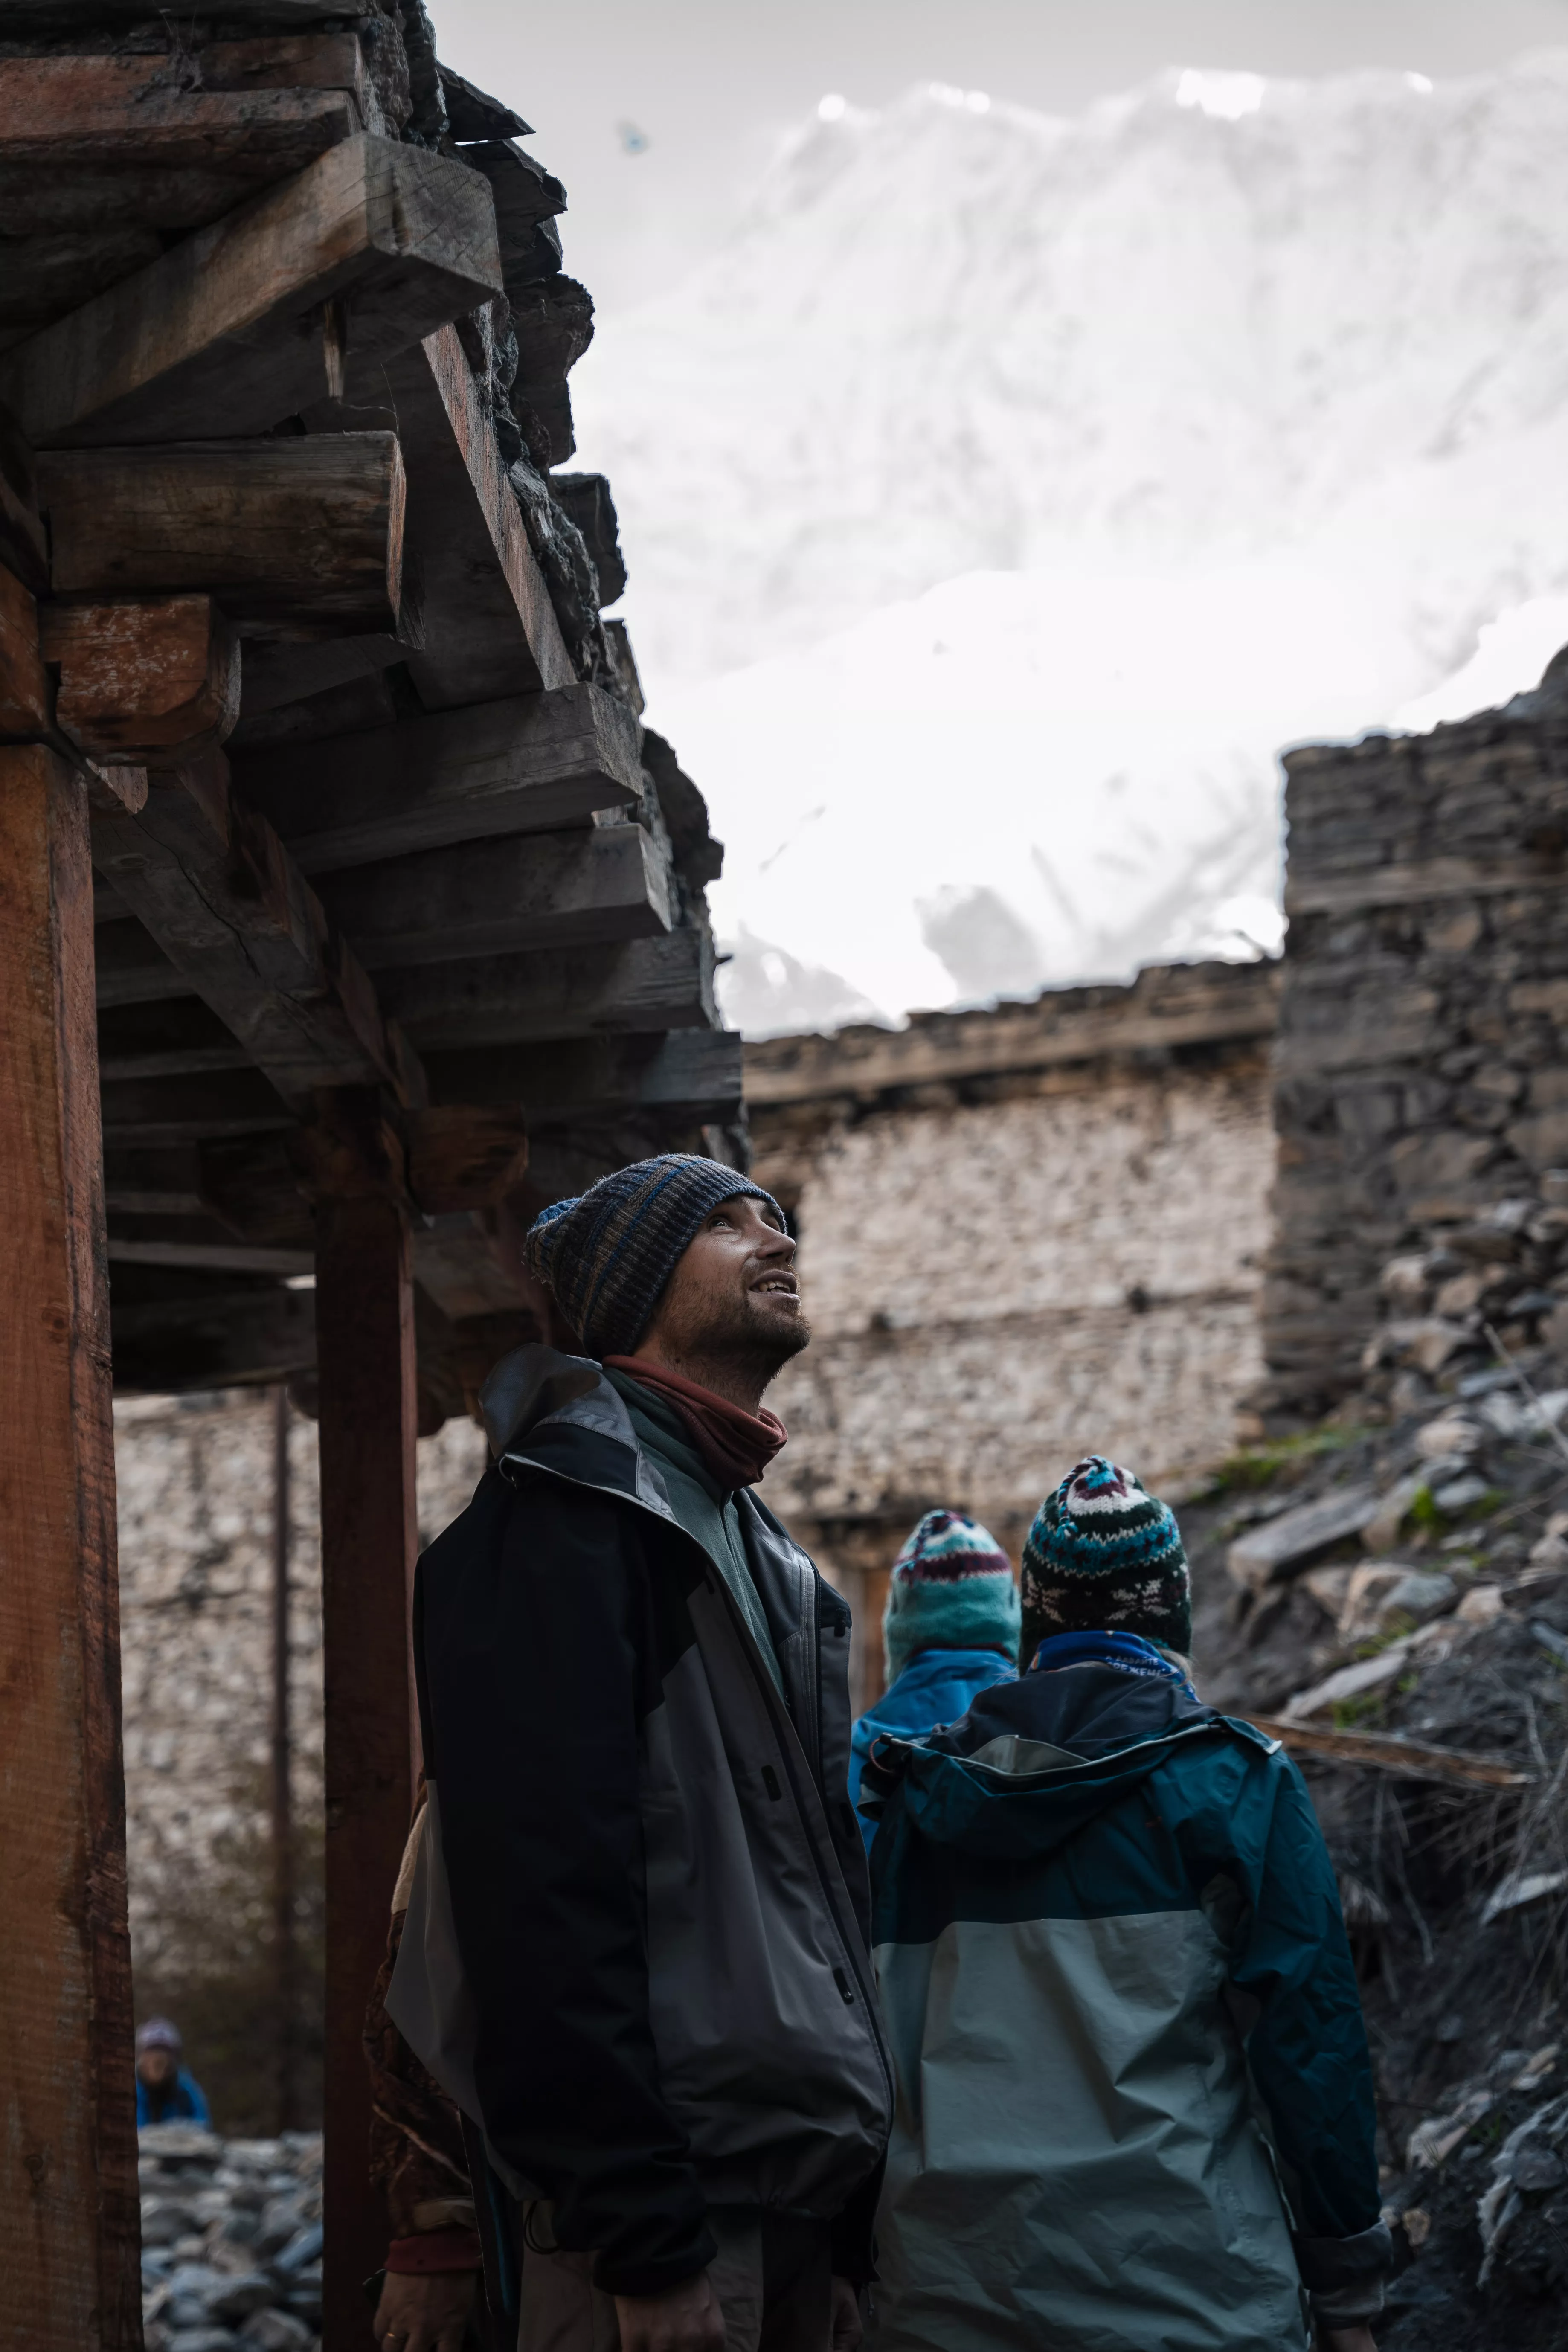 Треккинг вокруг Манаслу в Гималаях